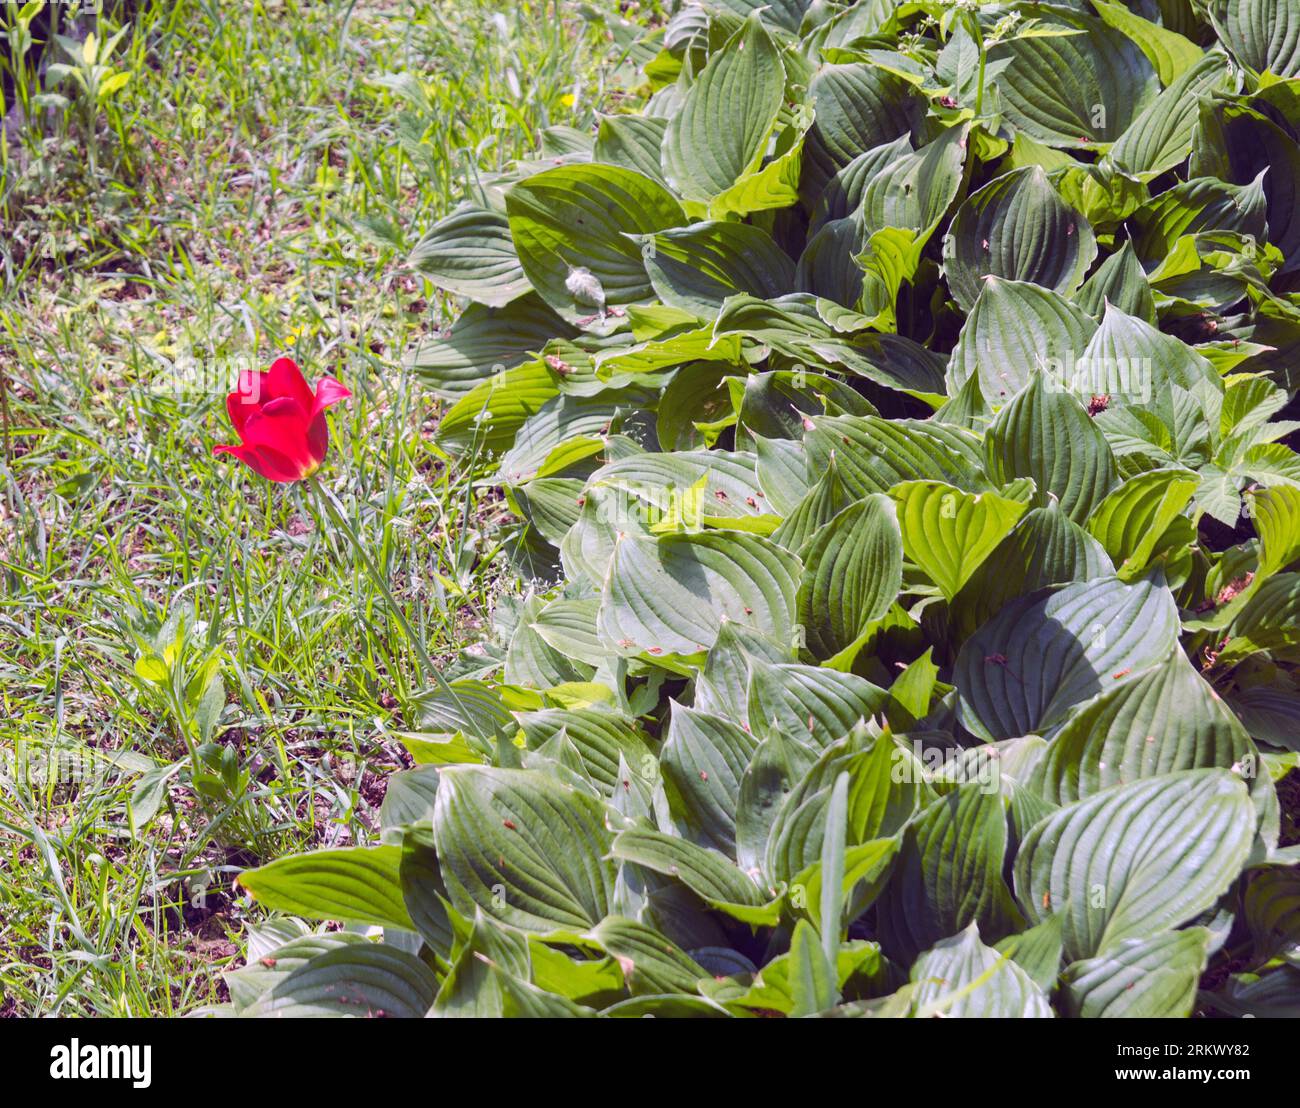 Einsame rote Blume inmitten des grünen Laubes Stockfoto